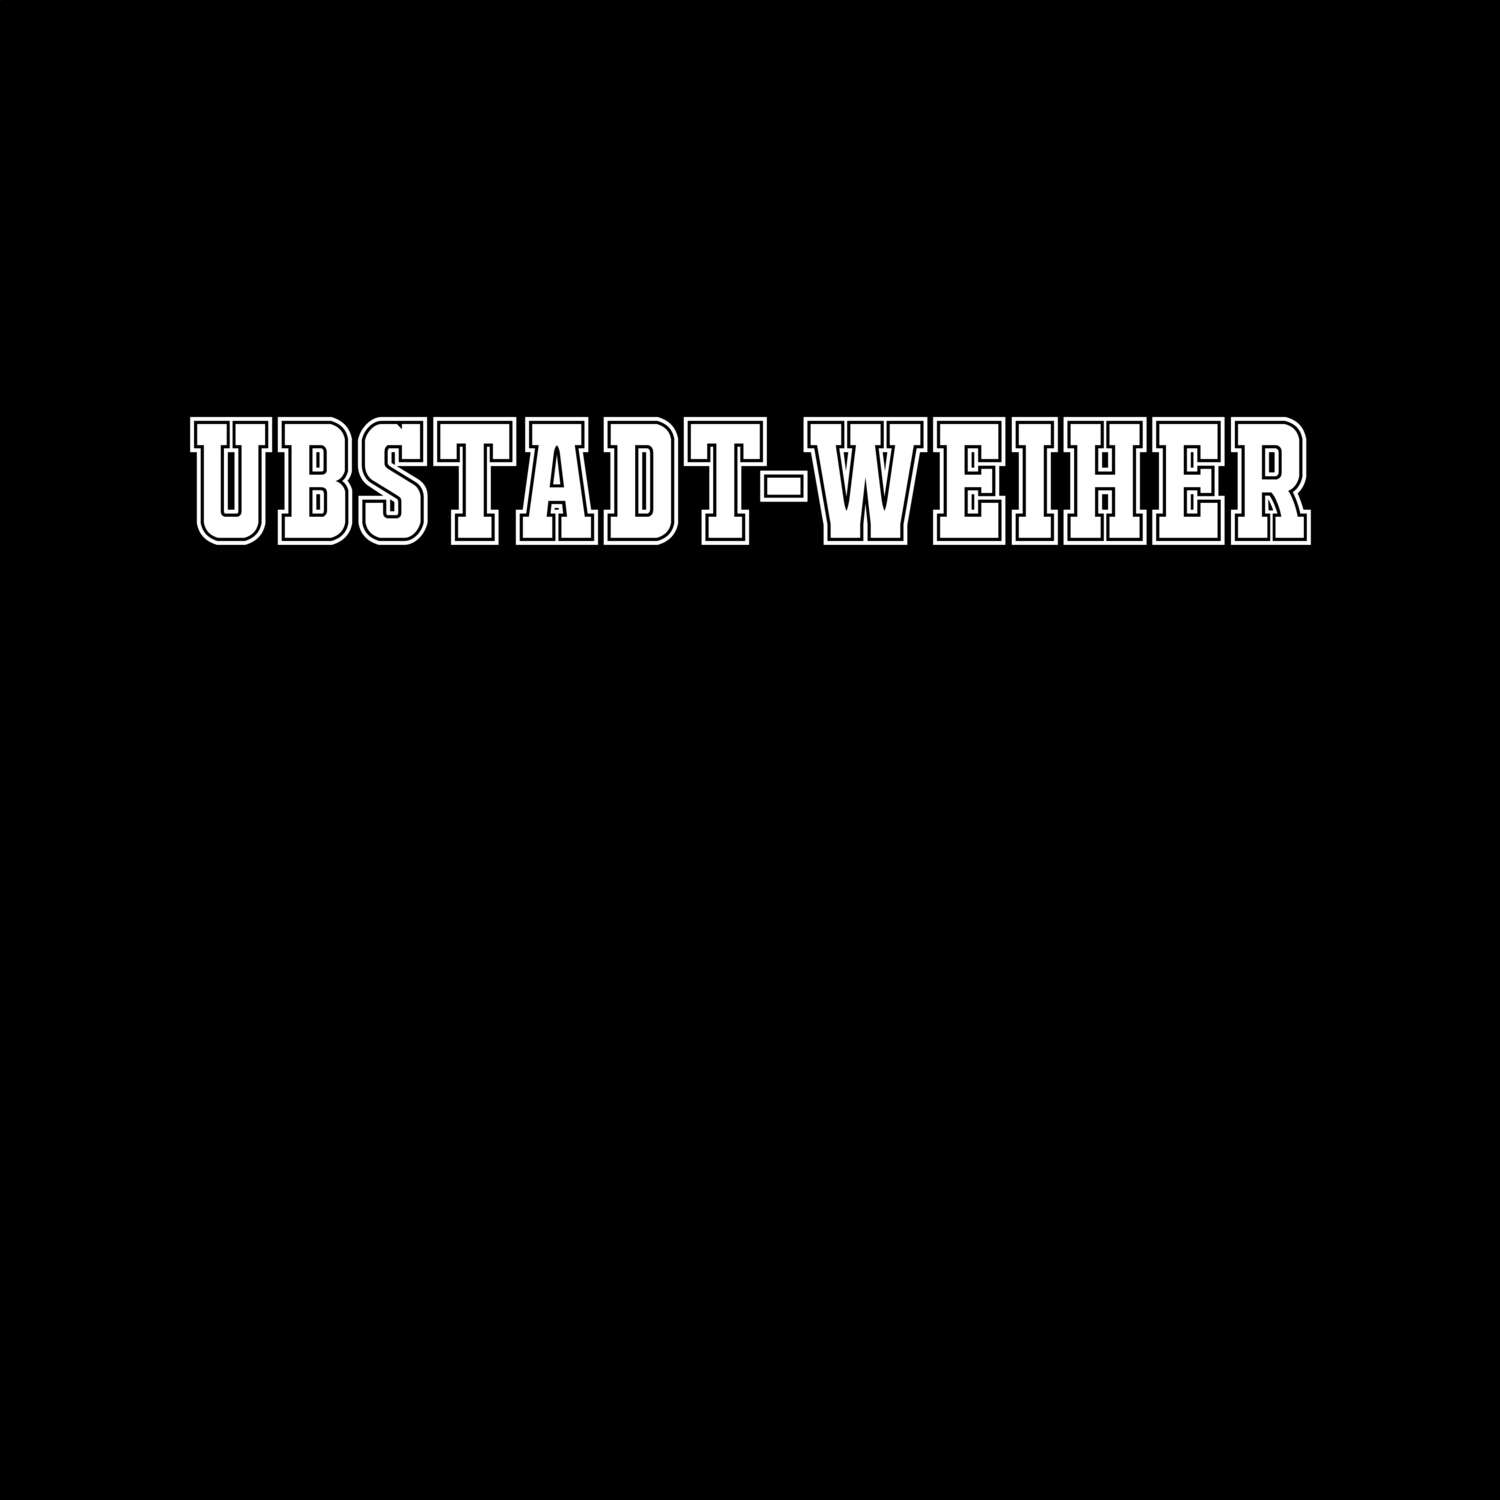 Ubstadt-Weiher T-Shirt »Classic«